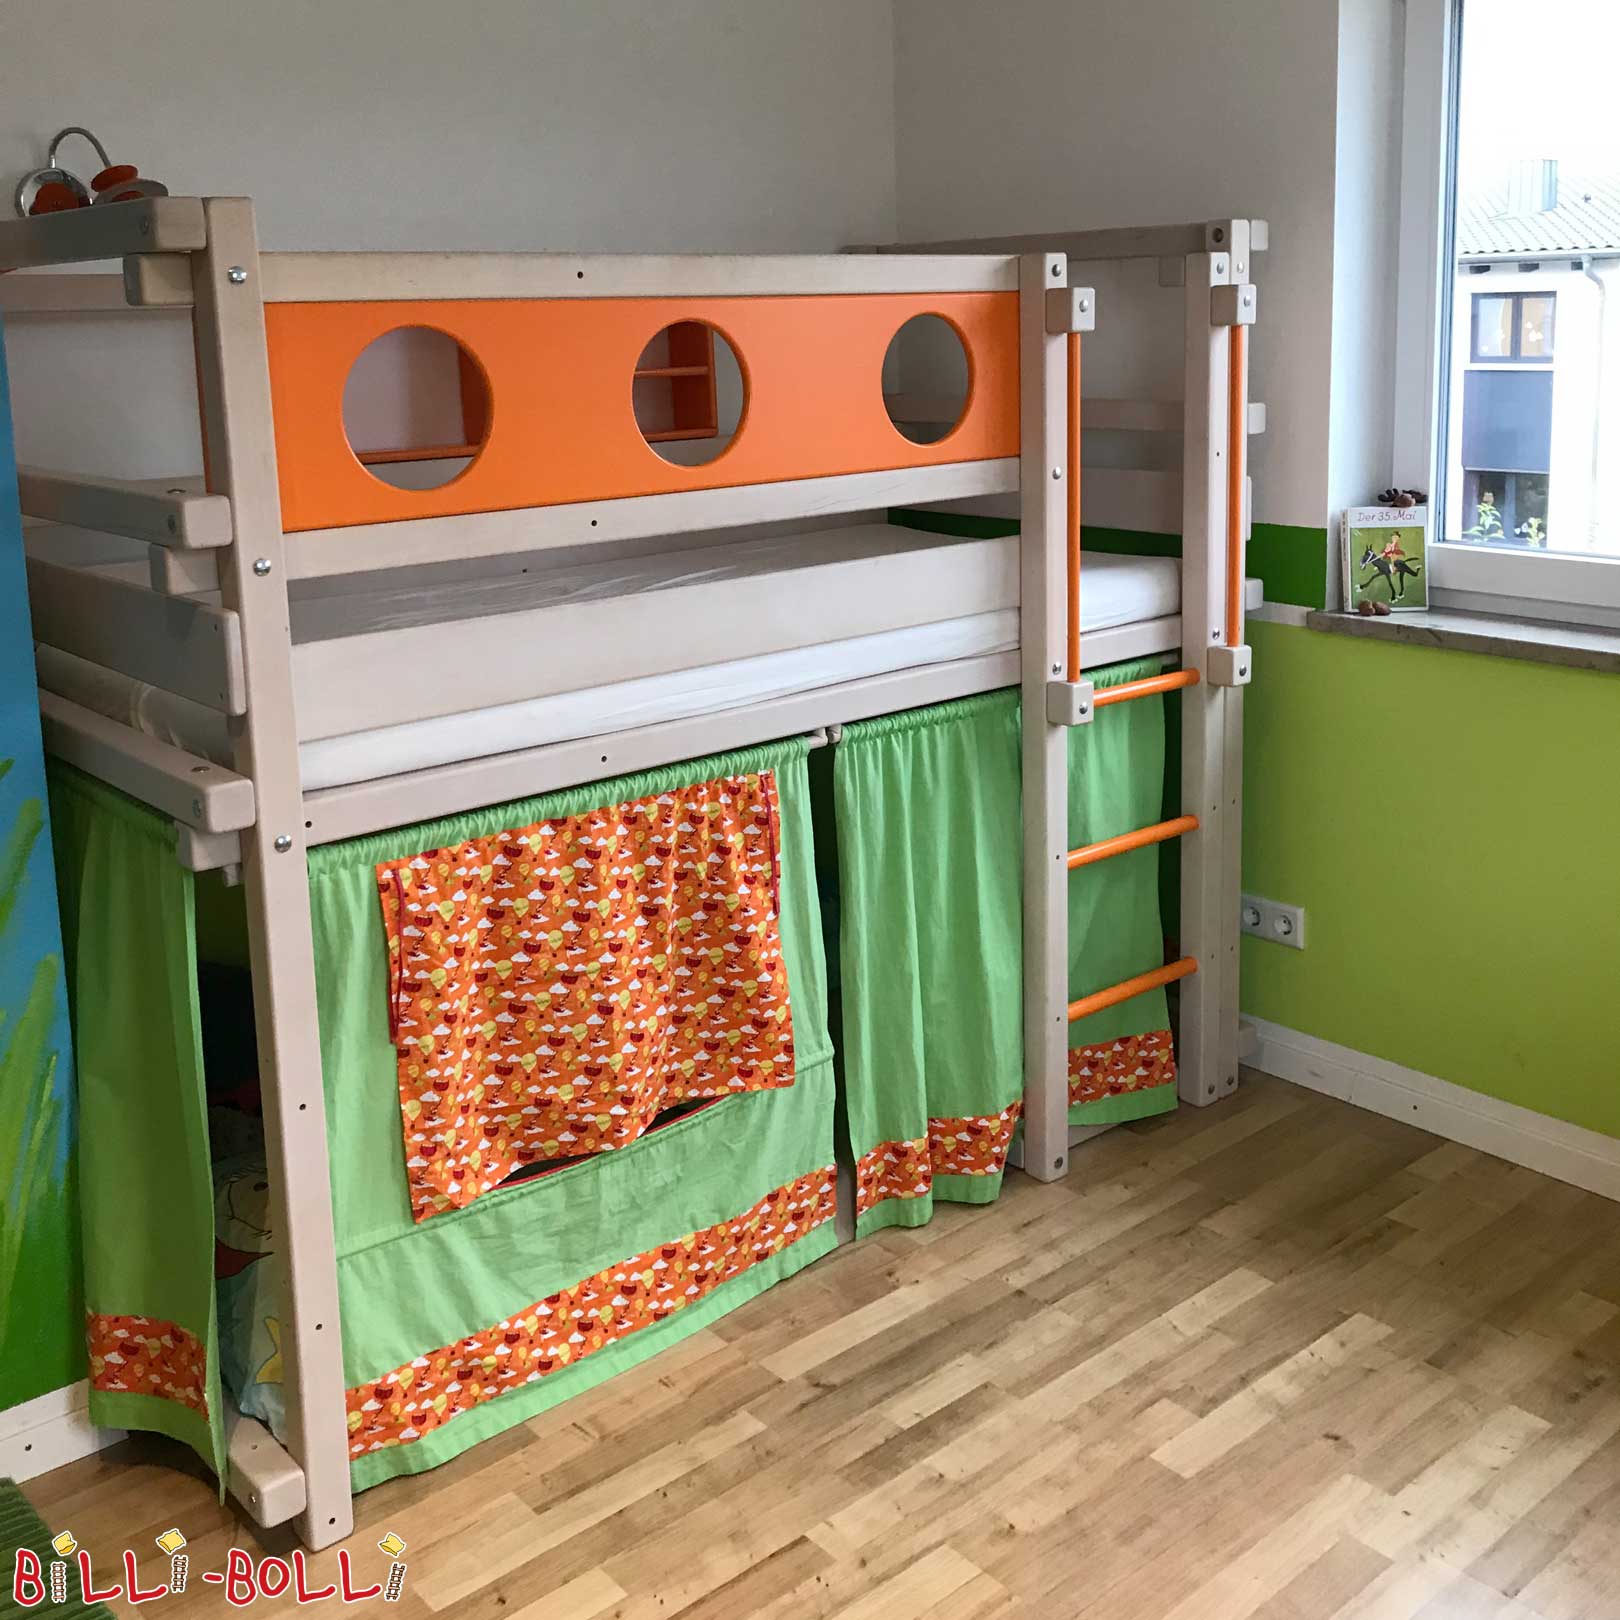 Cama semi-loft de color, la cama alta de media altura para niños pequeños (cama infantil) a partir de 3 años (Cama alta a media altura)